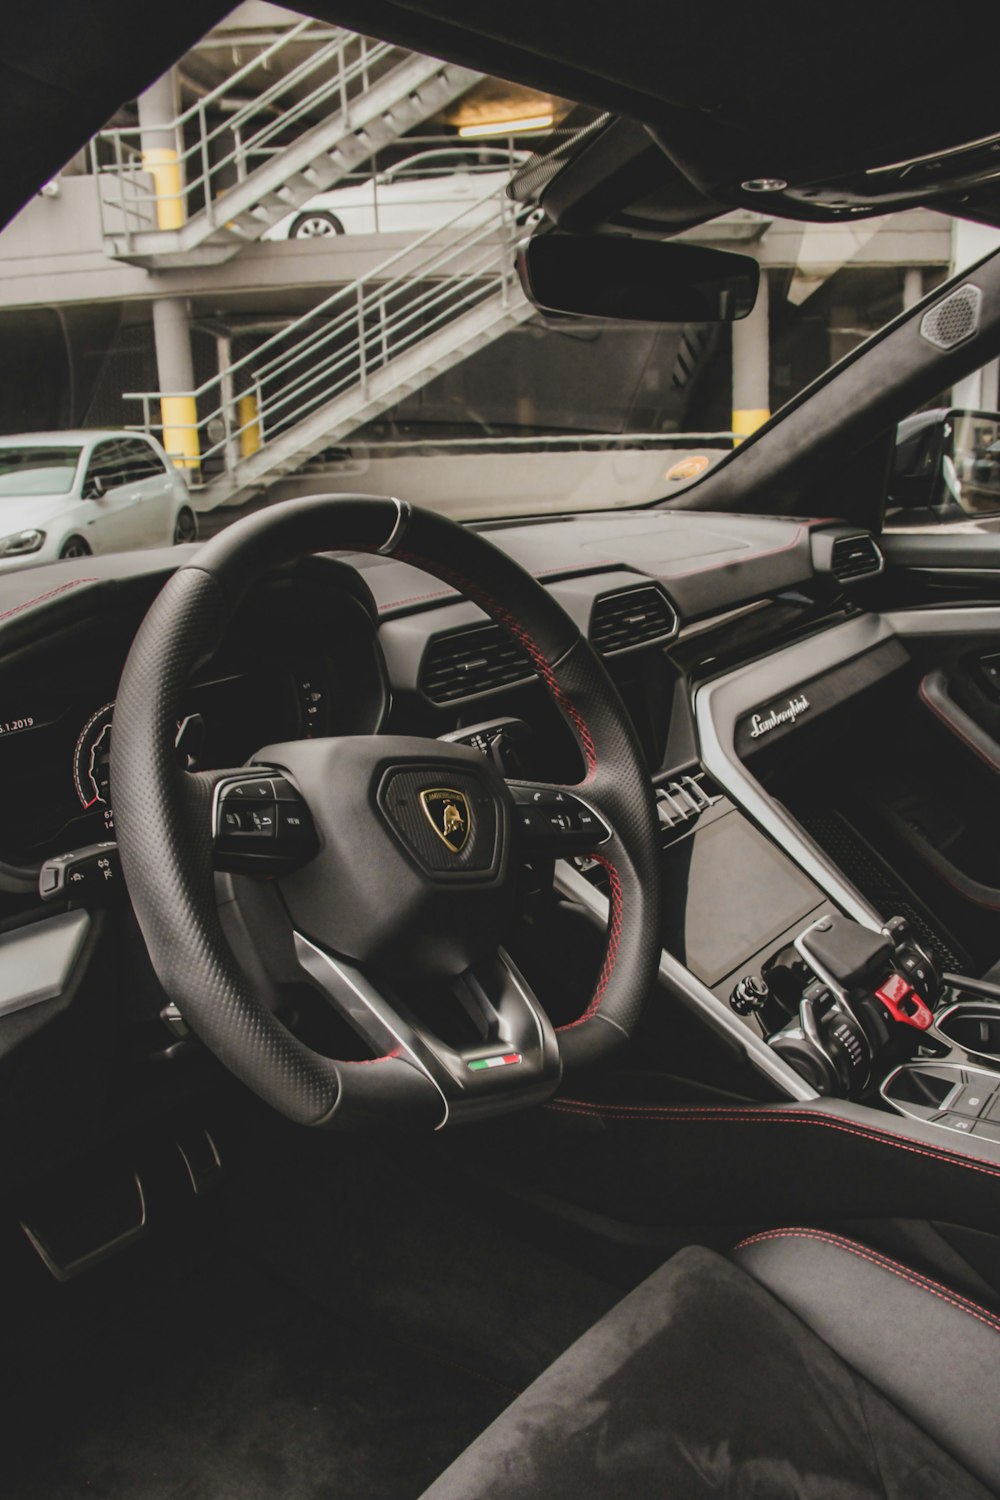 Lamborghini Urus Interior Pictures Download Free Images On